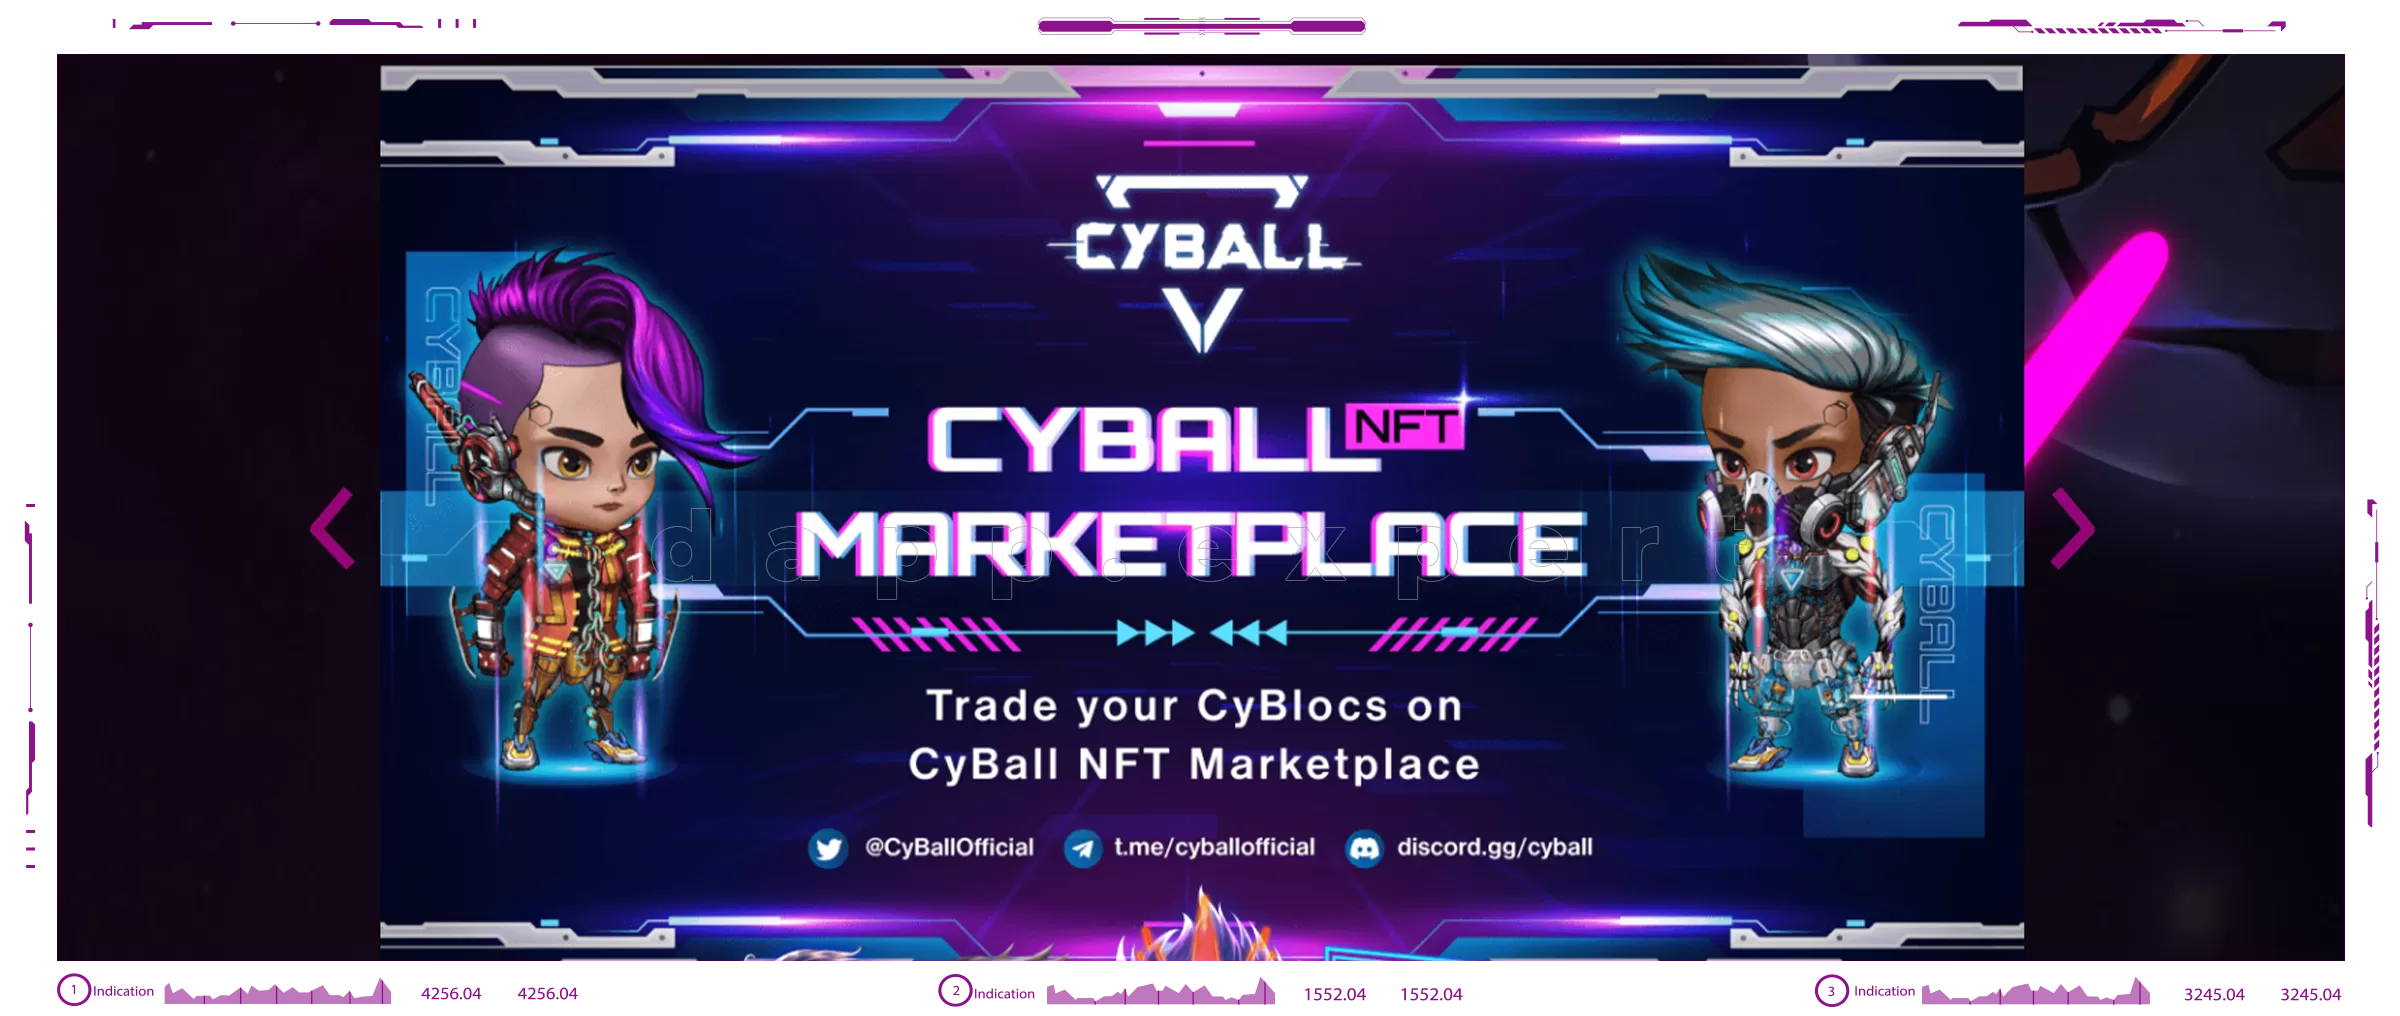 CyBall dapps